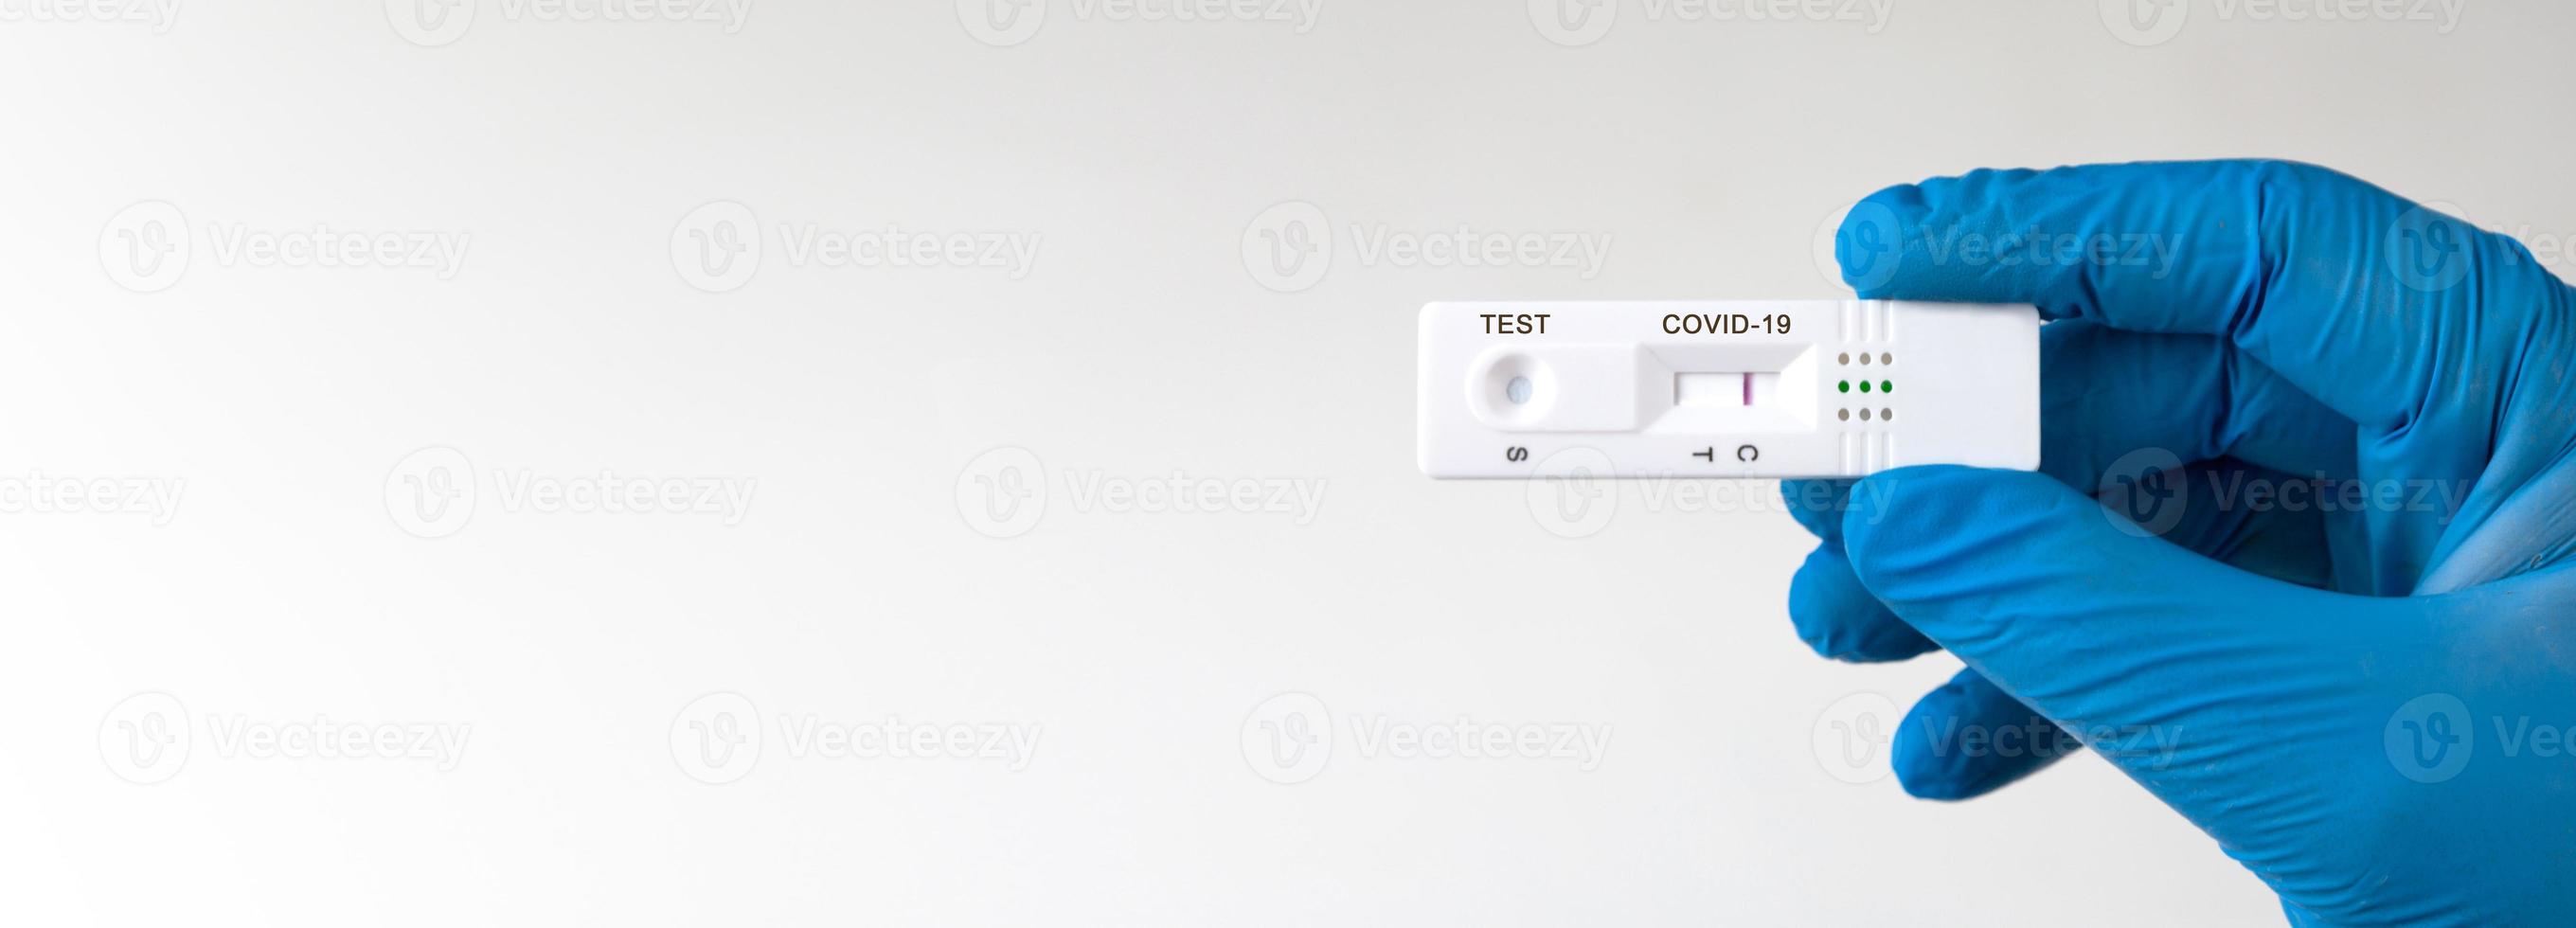 resultado de teste negativo usando dispositivo de teste rápido para covid-19. foto